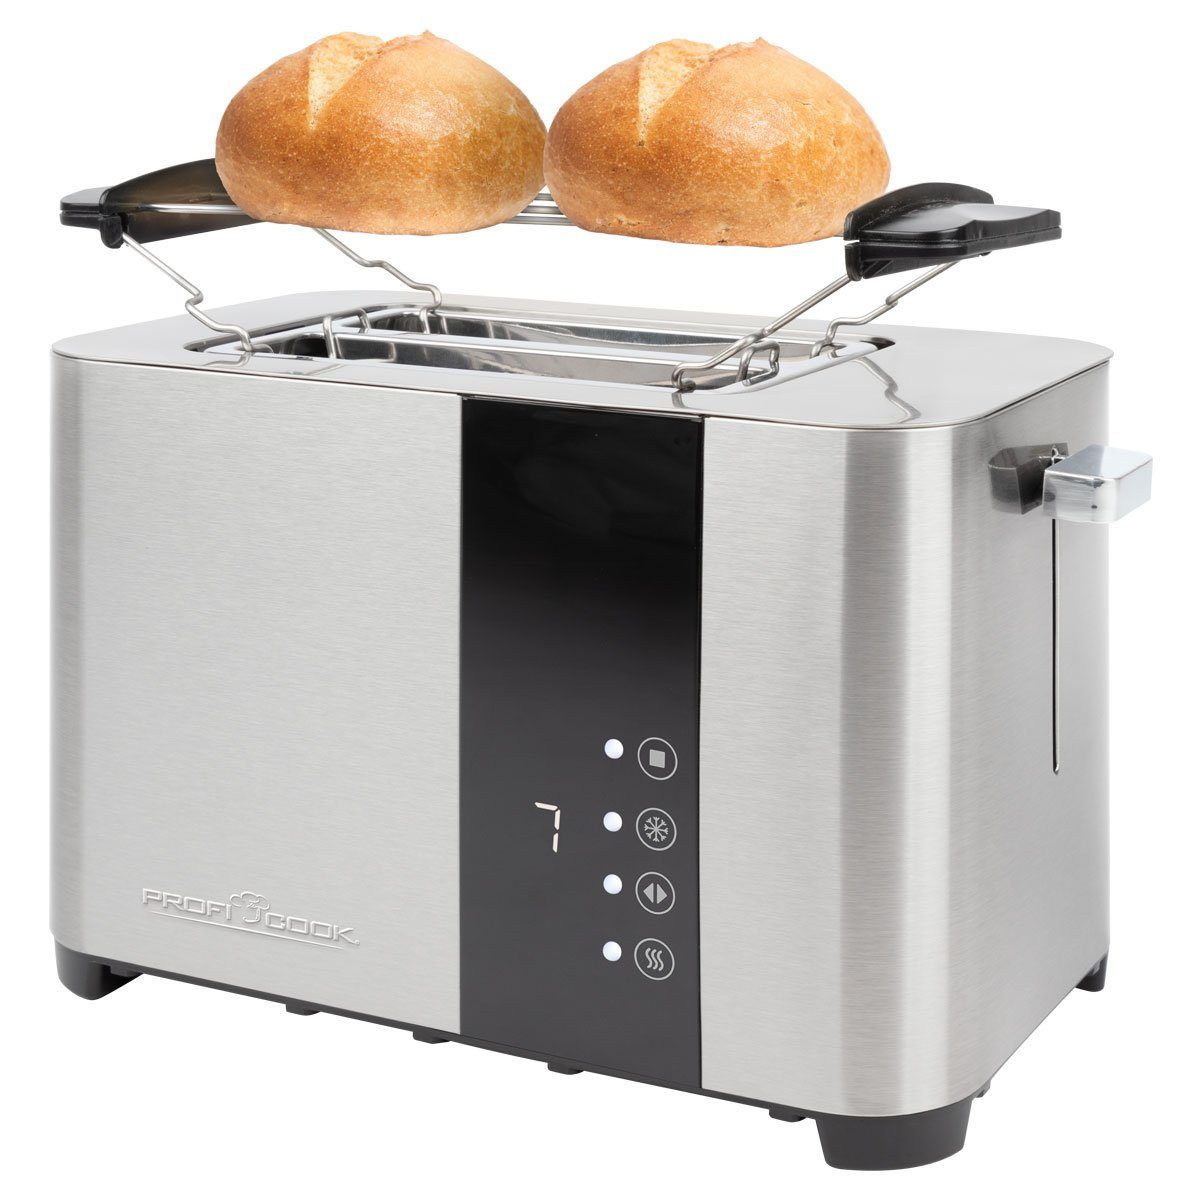 ProfiCook Toaster PC-TA 1250, Toaster 2 Scheiben, mit Senor Touch-Bedienung, Edelstahl | Langschlitztoaster